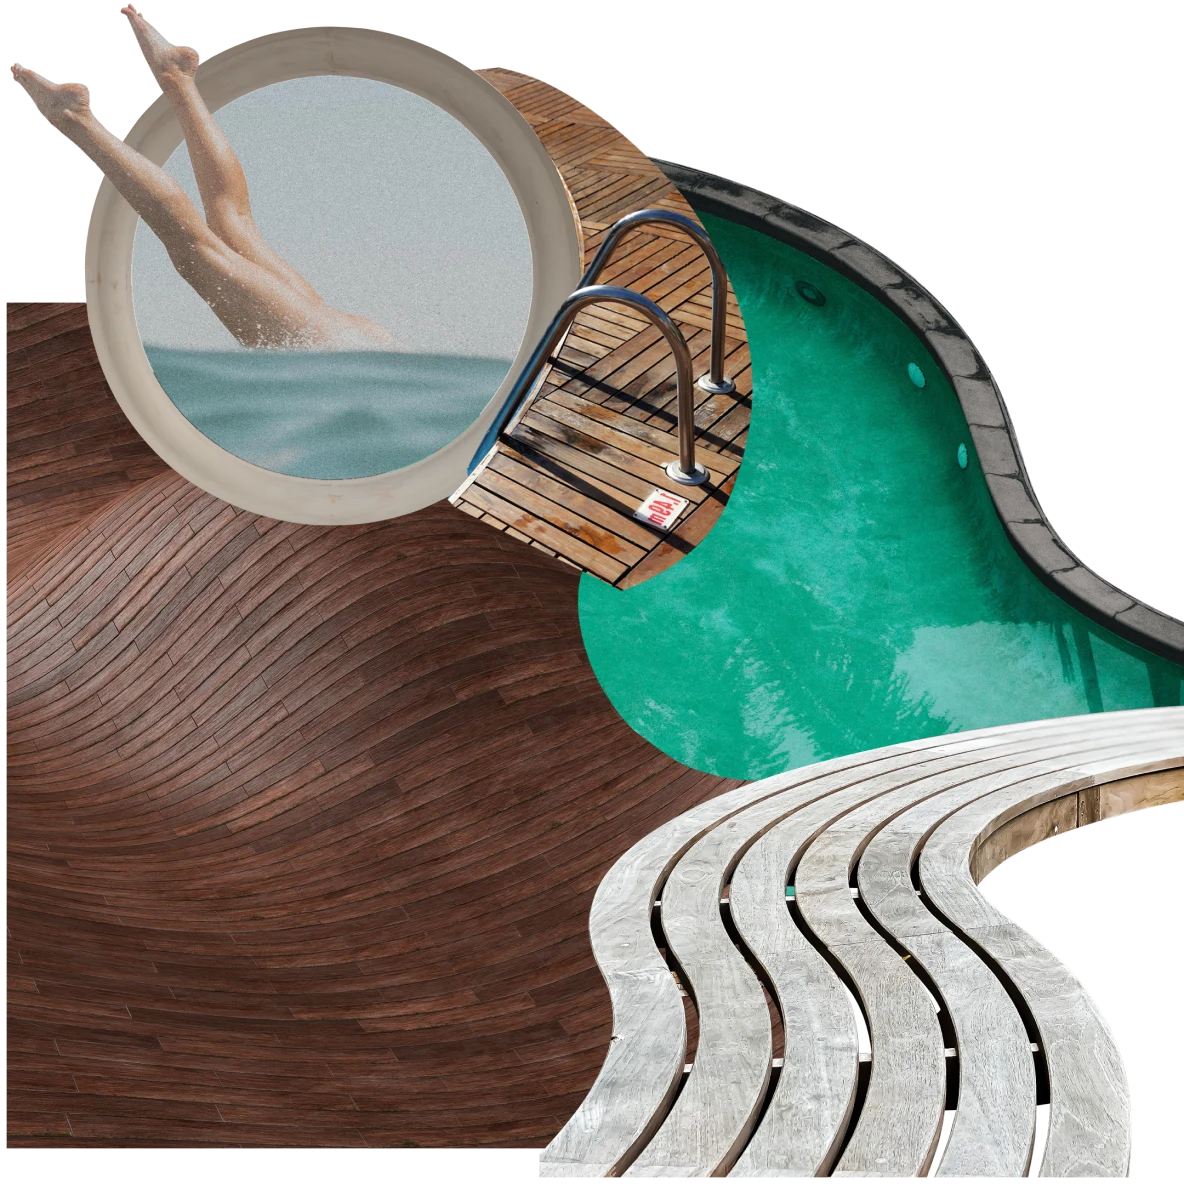 Collage sur le thème de la piscine. Jambes plongeant dans un jacuzzi rond vu du dessus. Passerelle incurvée, panneau en bois foncé et bordure d'une piscine.